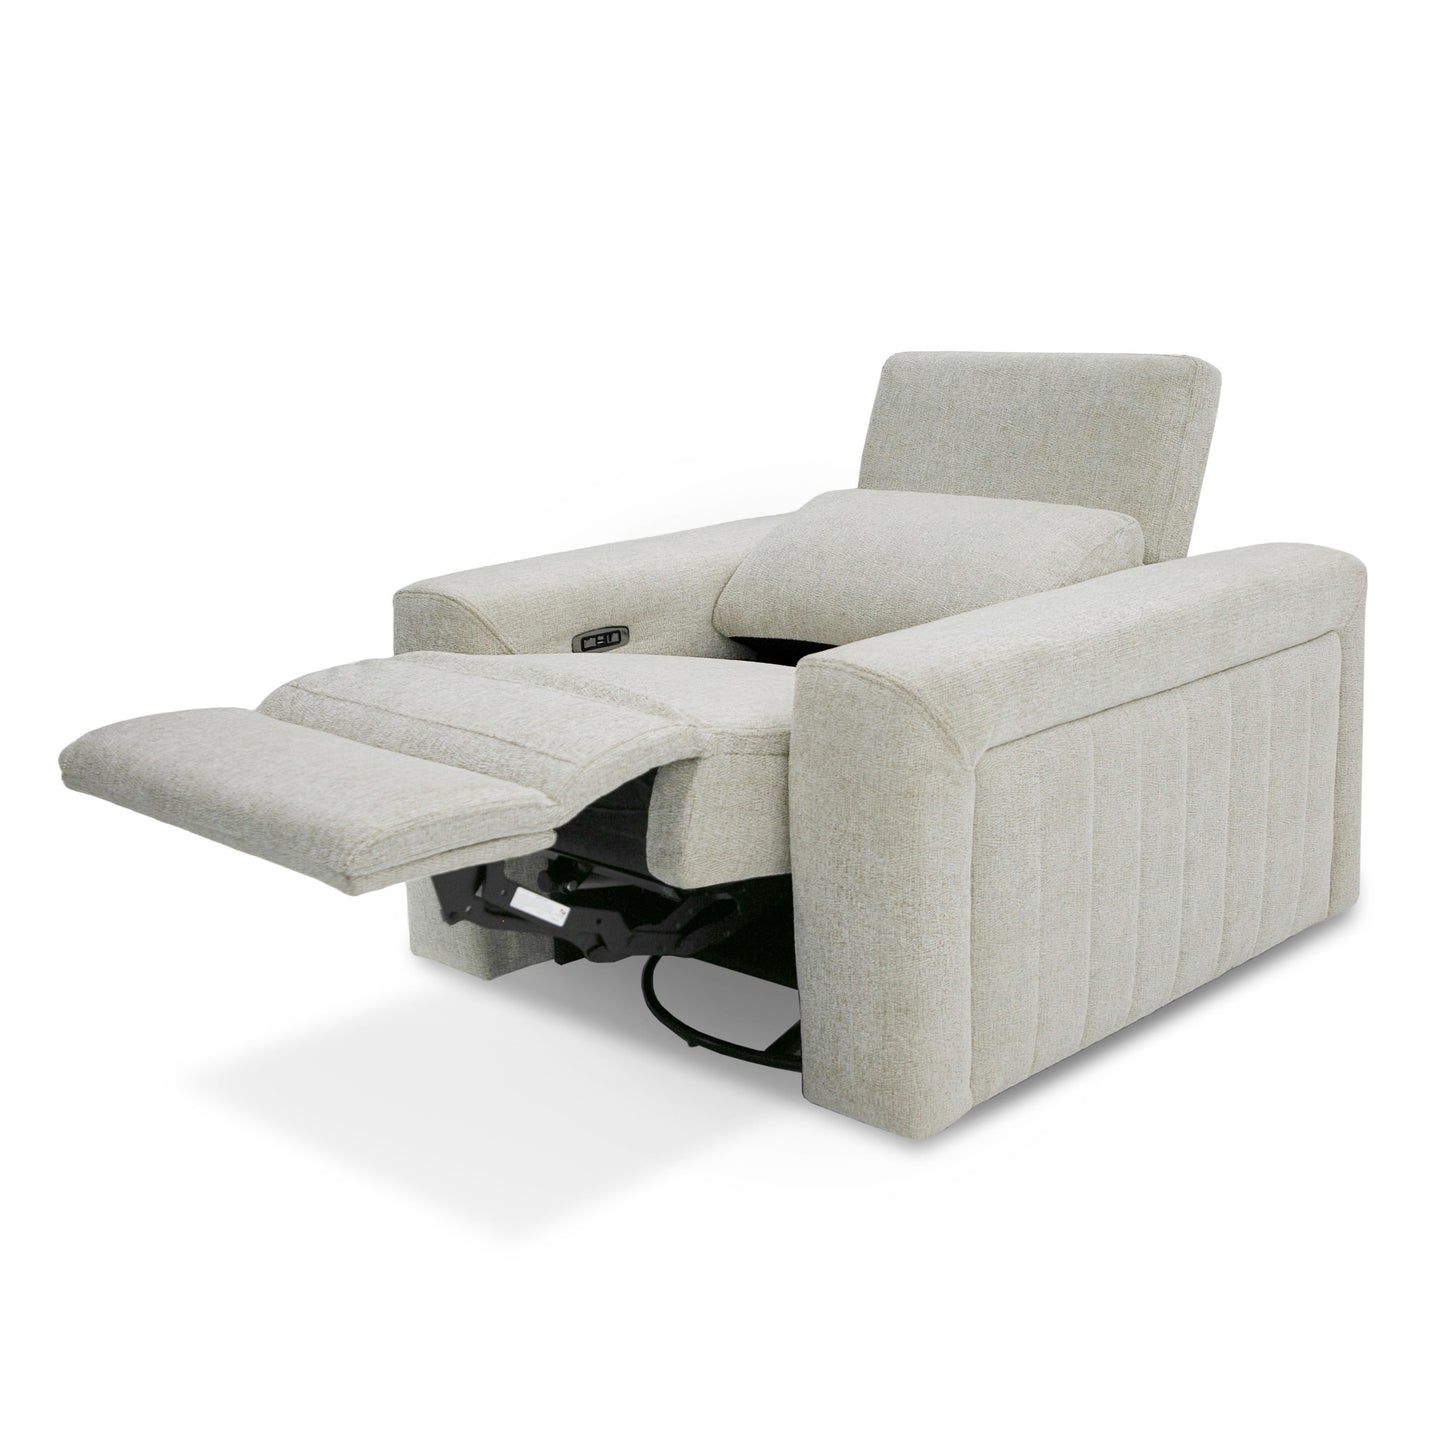 Divani Casa Gering - Modern Beige Fabric Power Recliner Chair